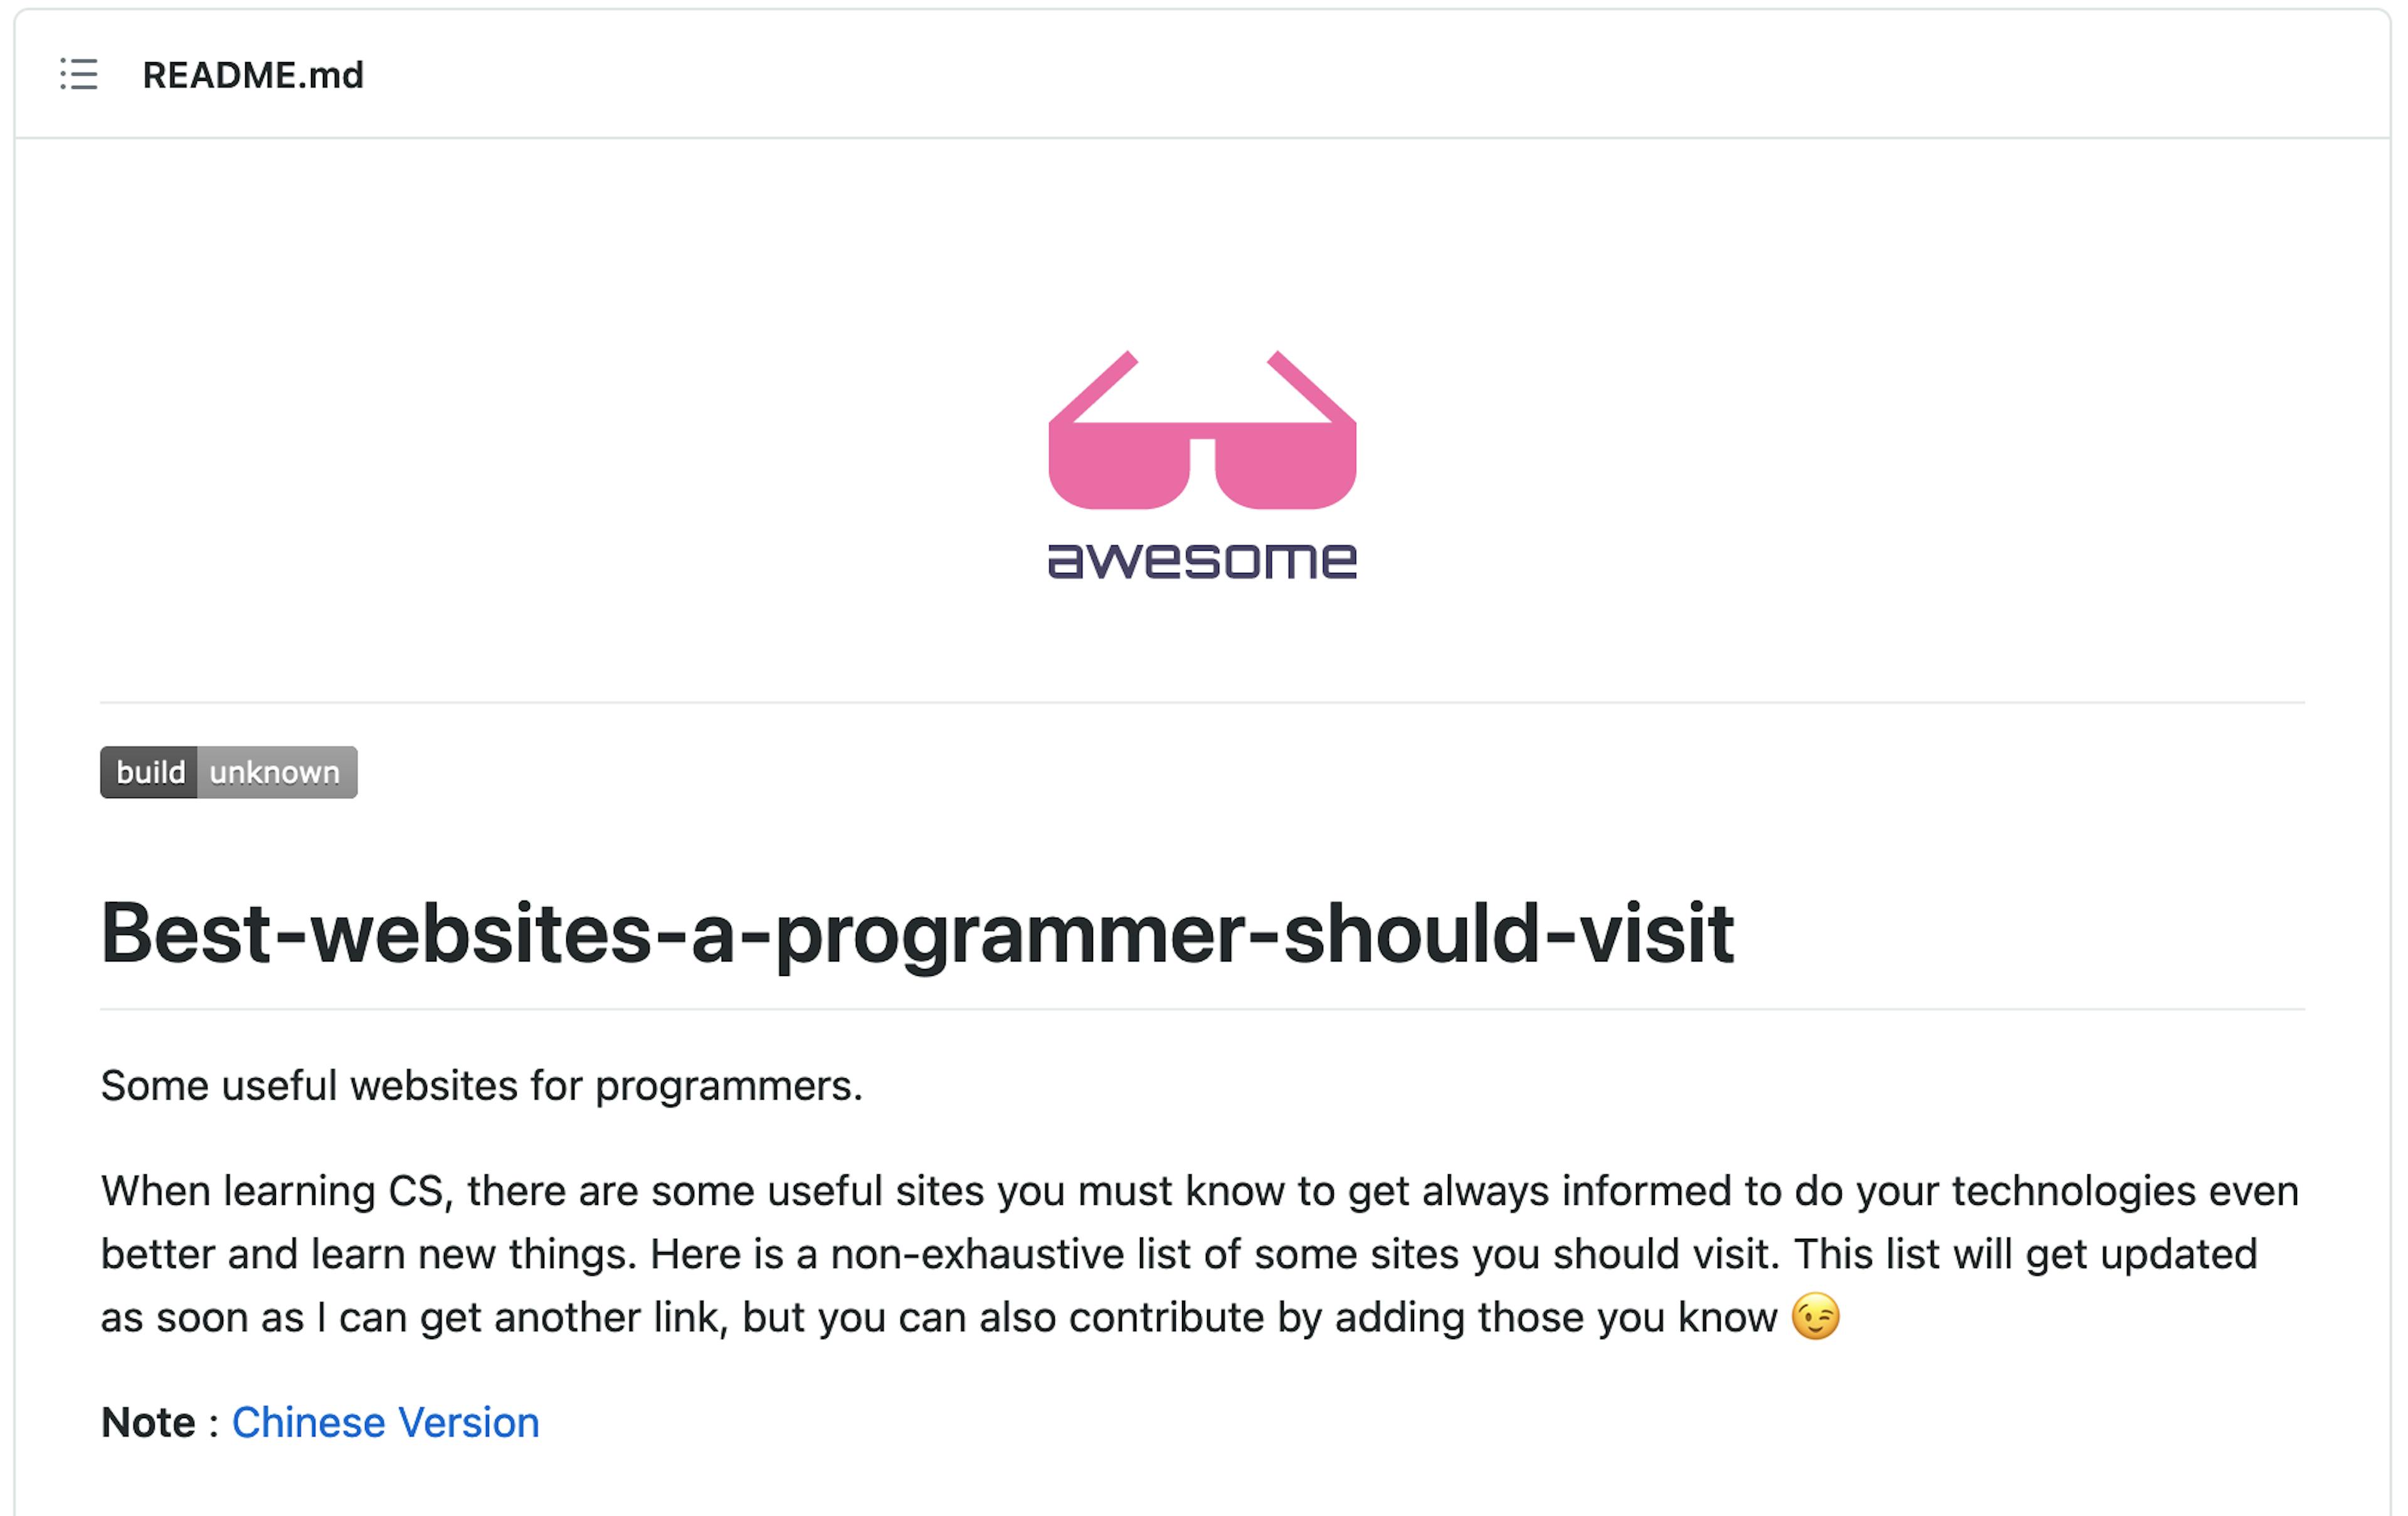 Best-websites-a-programmer-should-visit